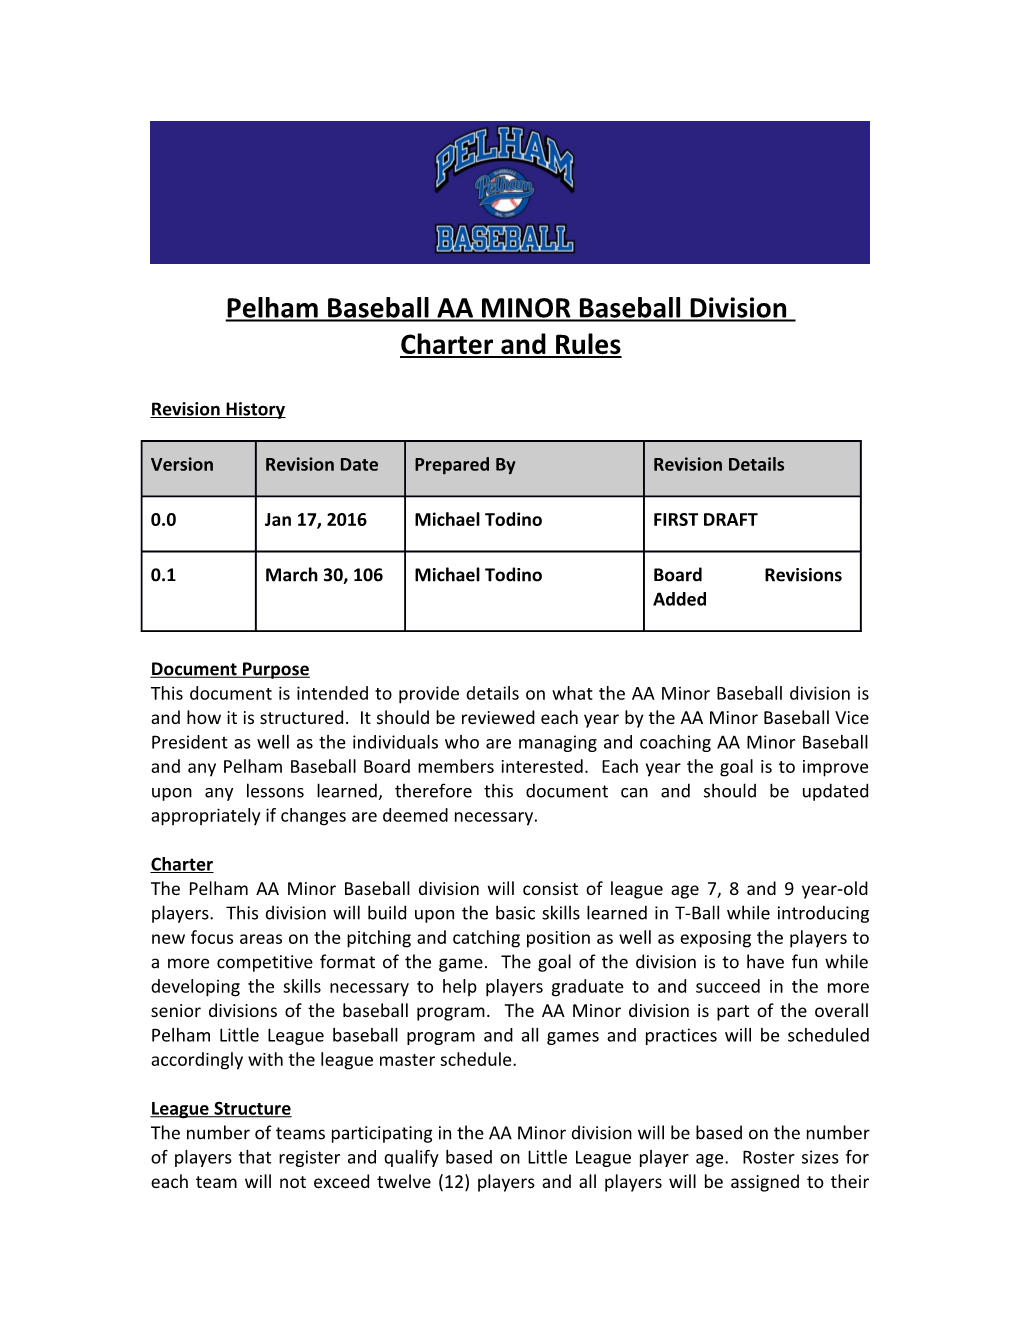 Pelham Baseballaa Minorbaseball Division